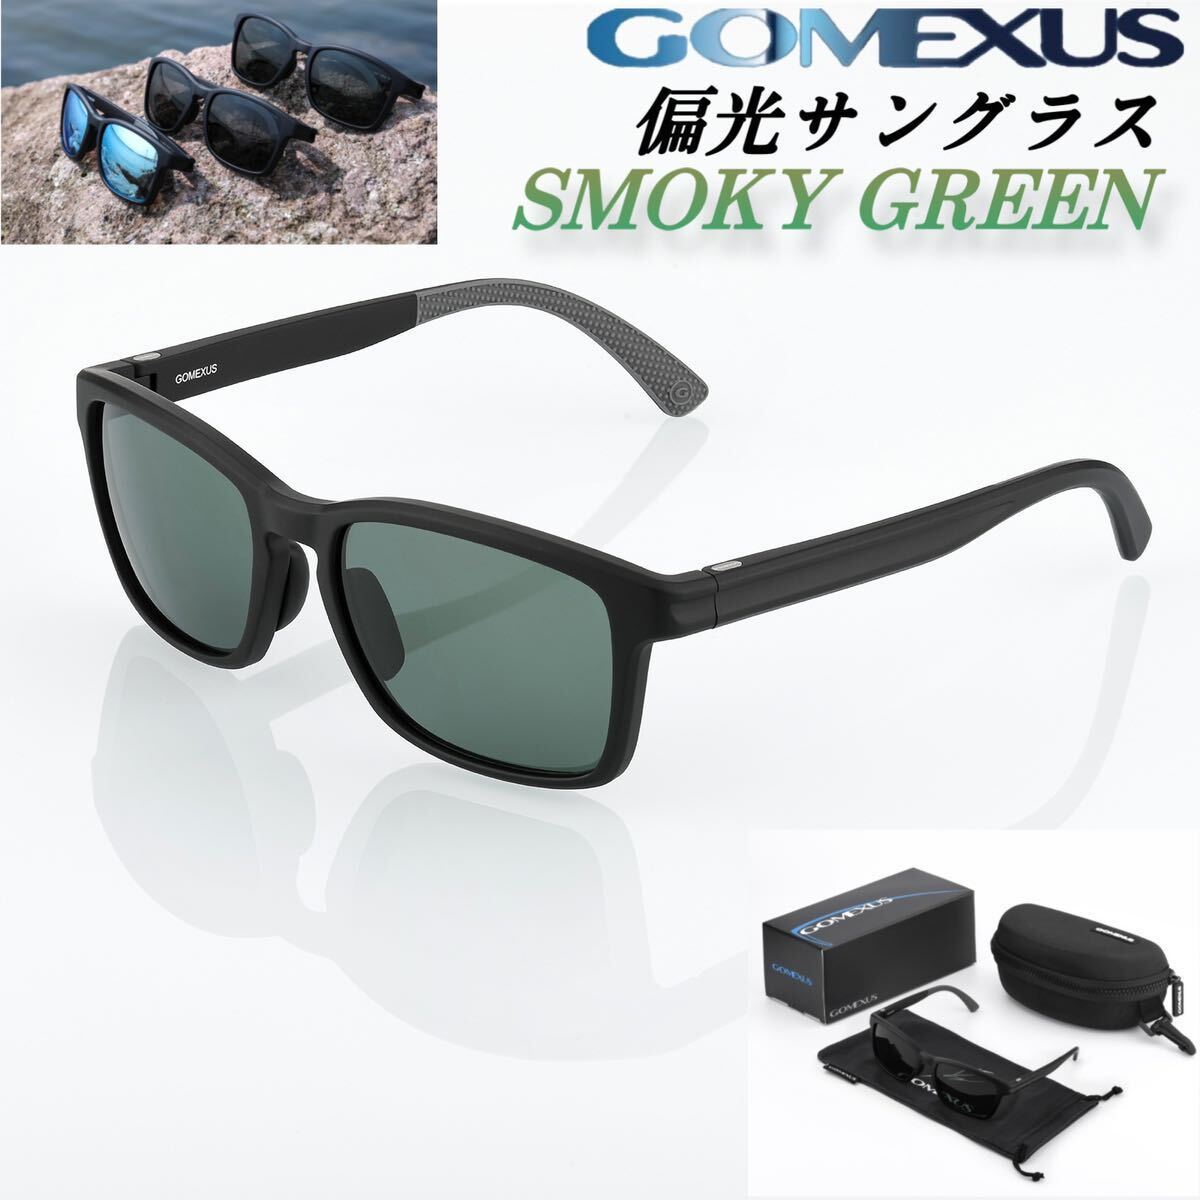 ゴメクサス/偏光サングラス/CR39光学レンズ/スモークグリーン/ウェリントン型　ケース付/99.9%UVカット